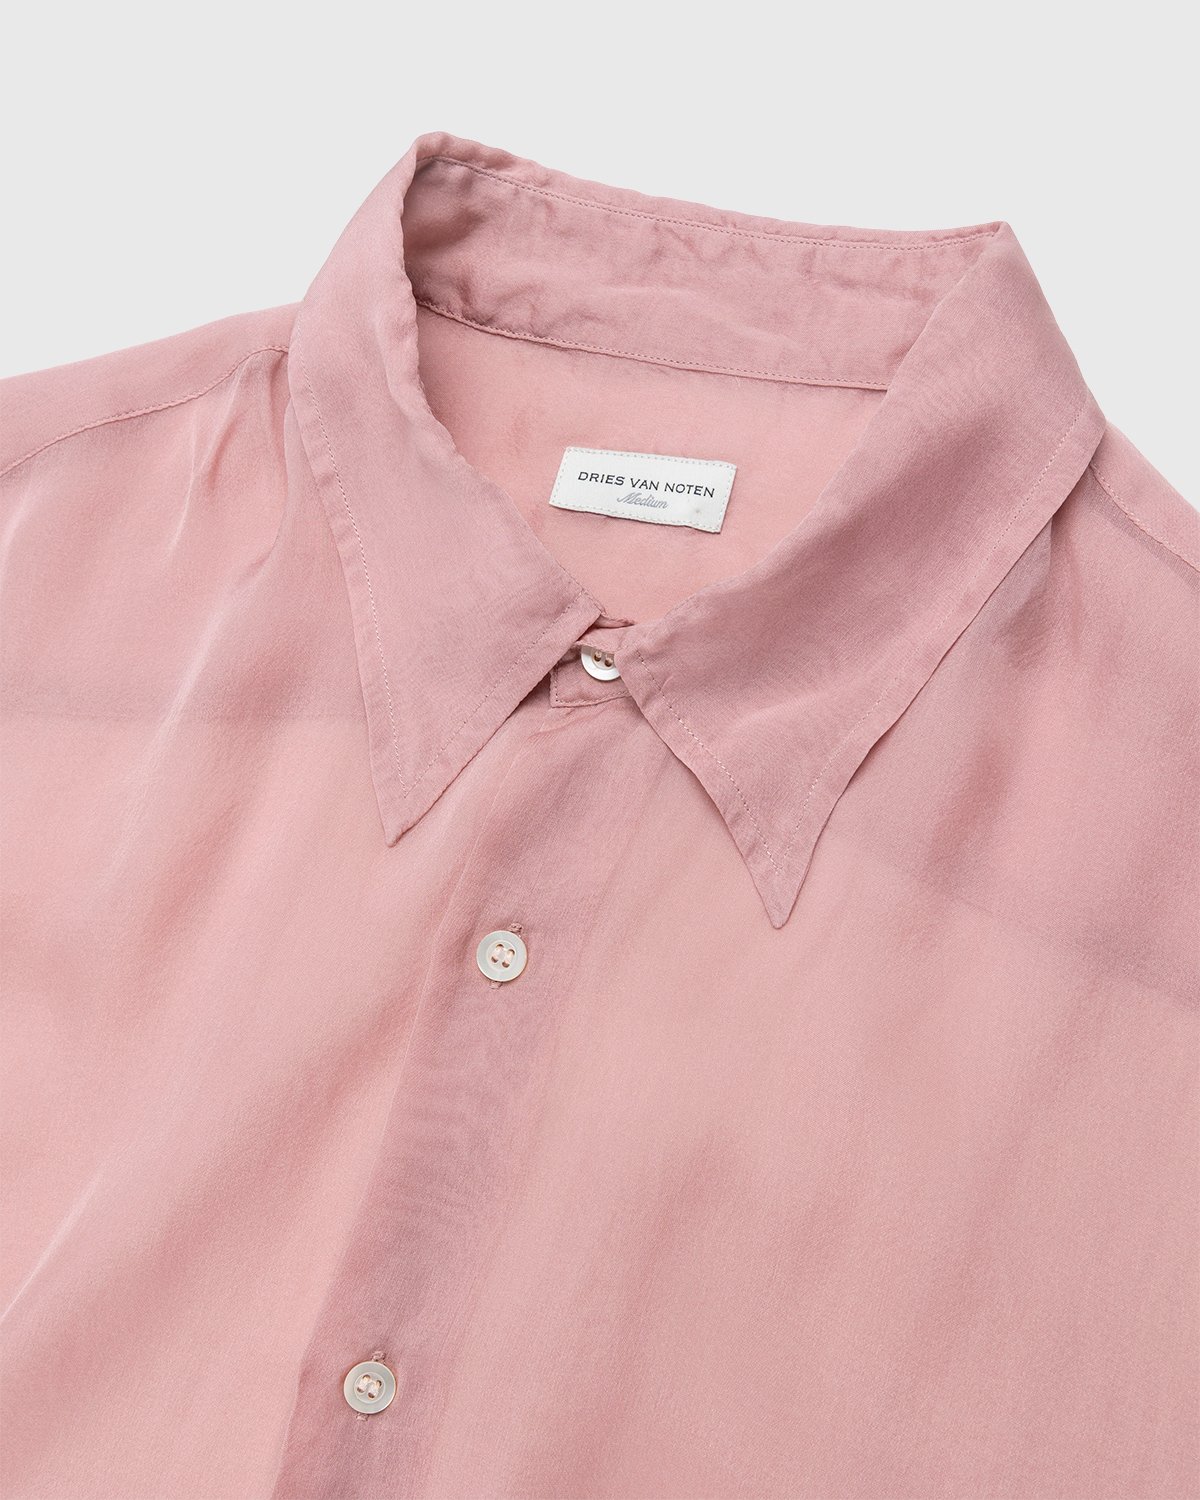 Dries van Noten - Cassidye Shirt Rose - Clothing - Pink - Image 4